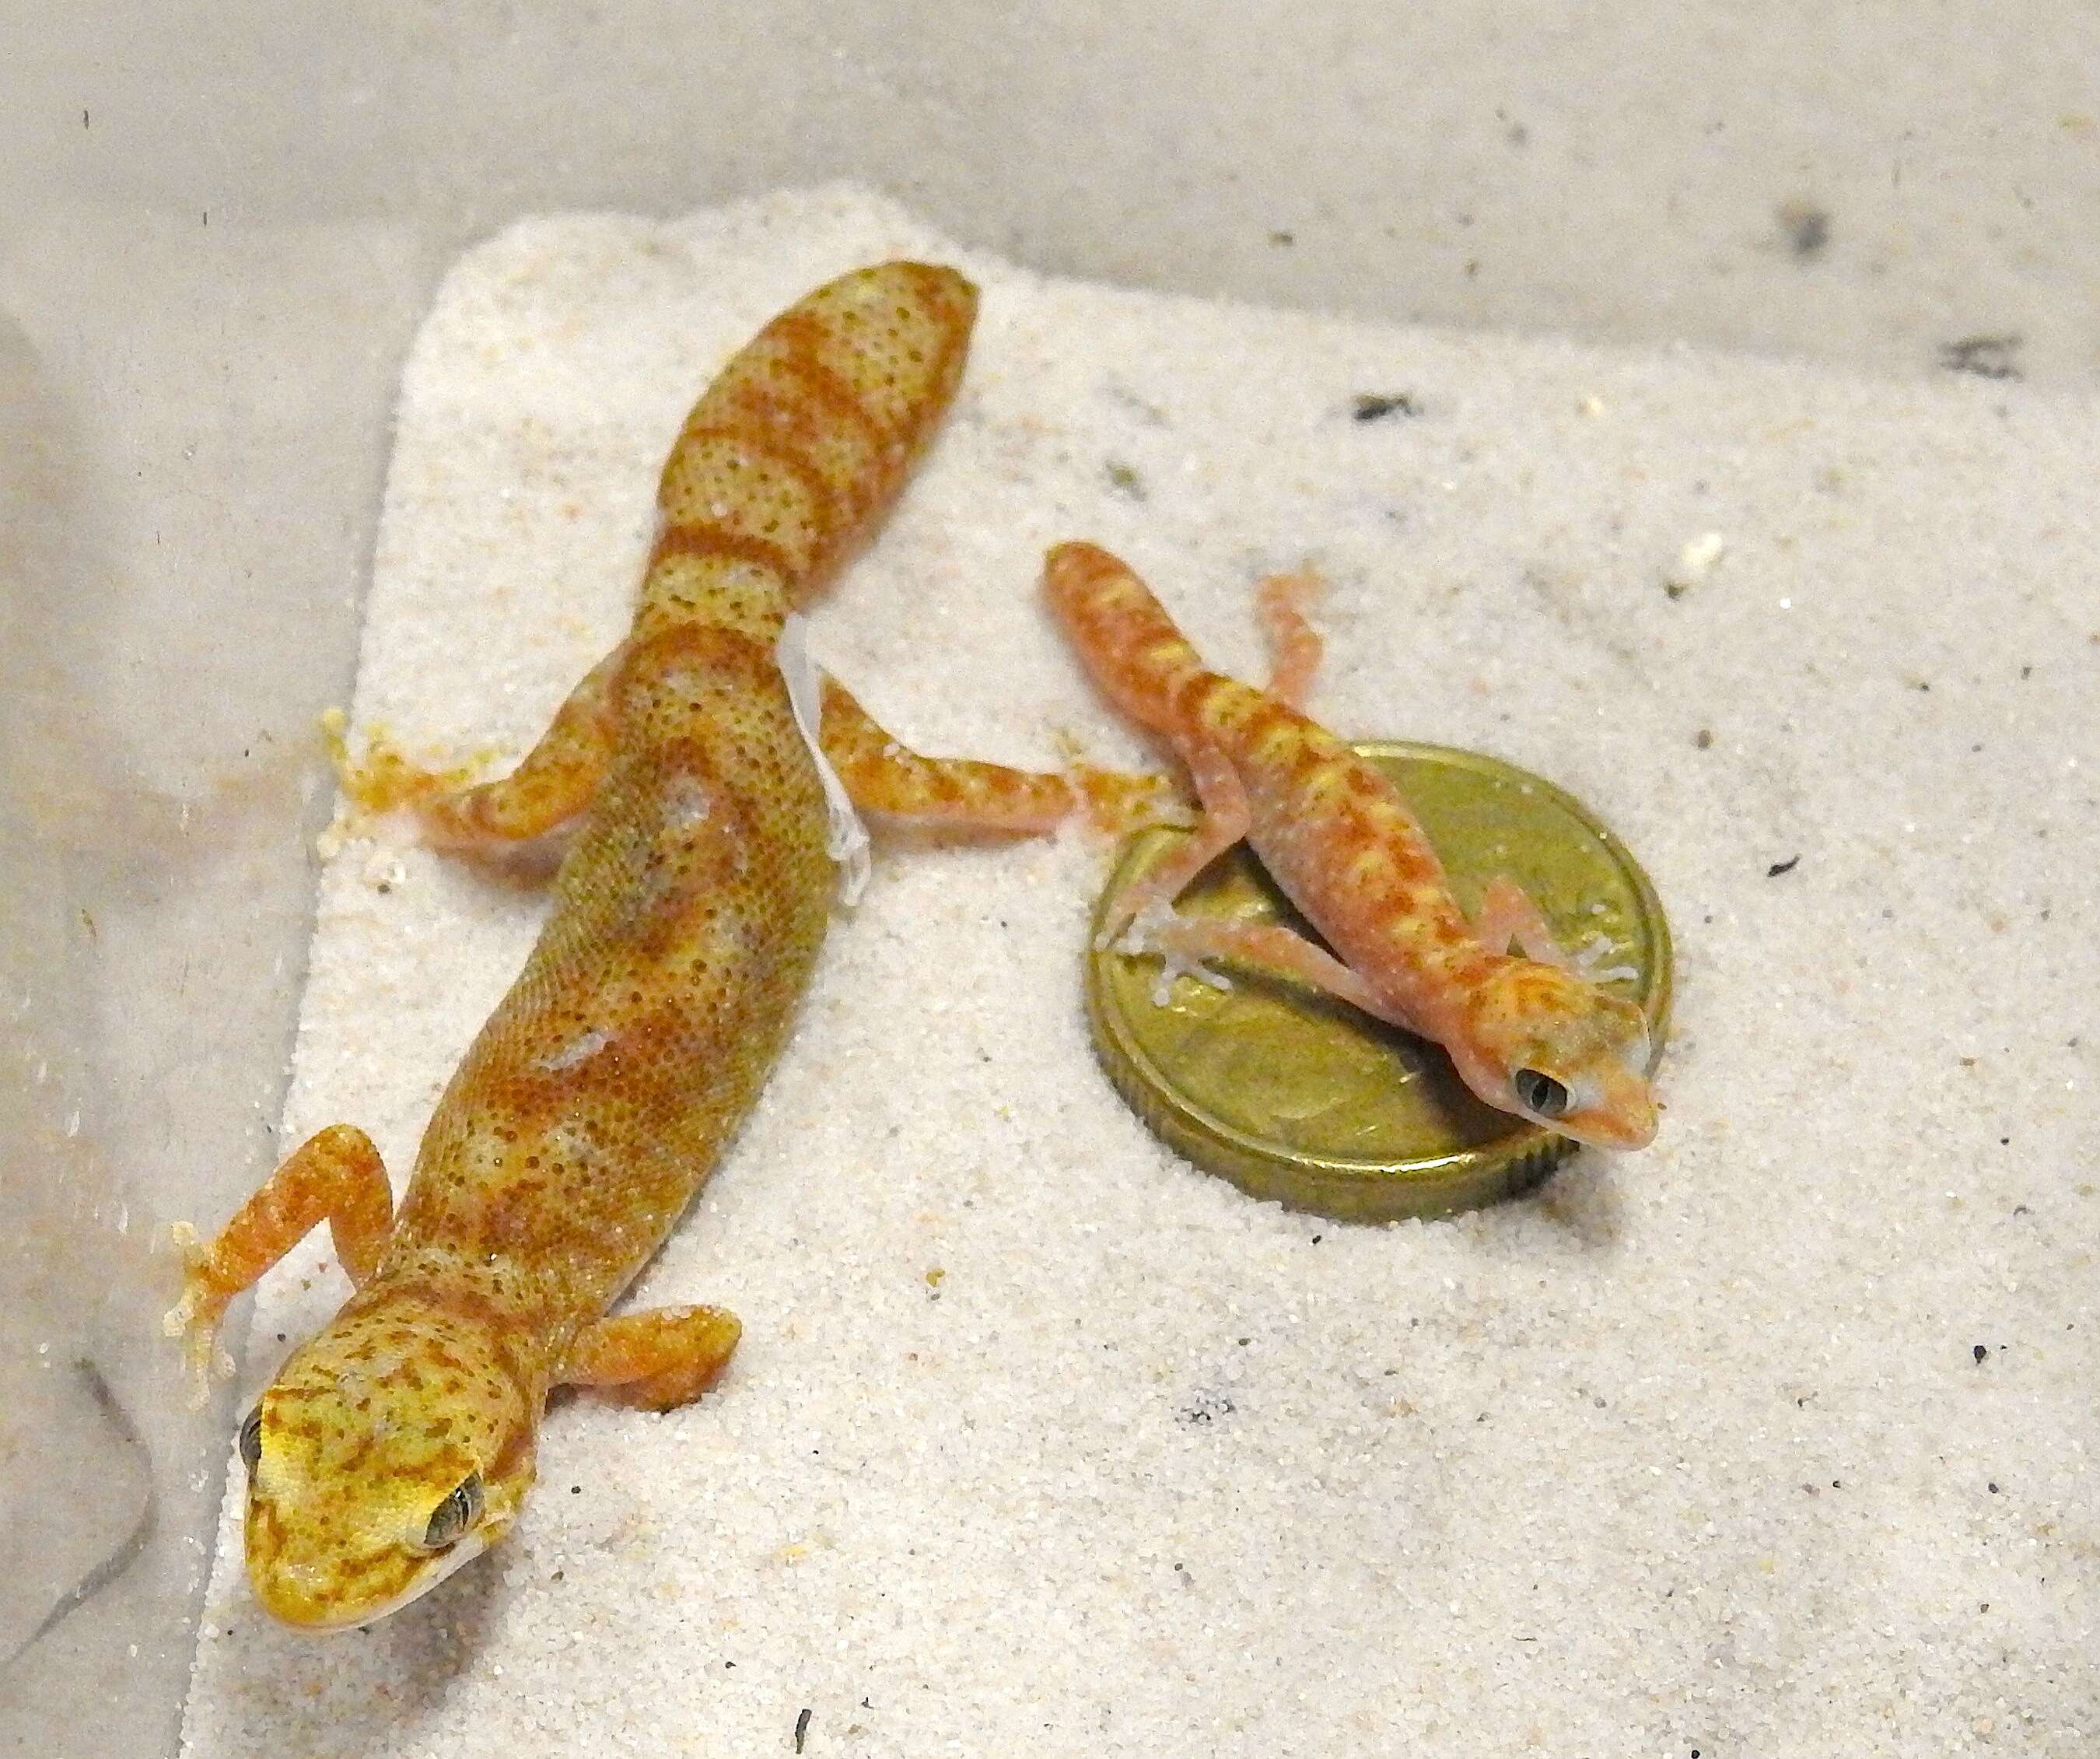 Image of Tesselated Gecko